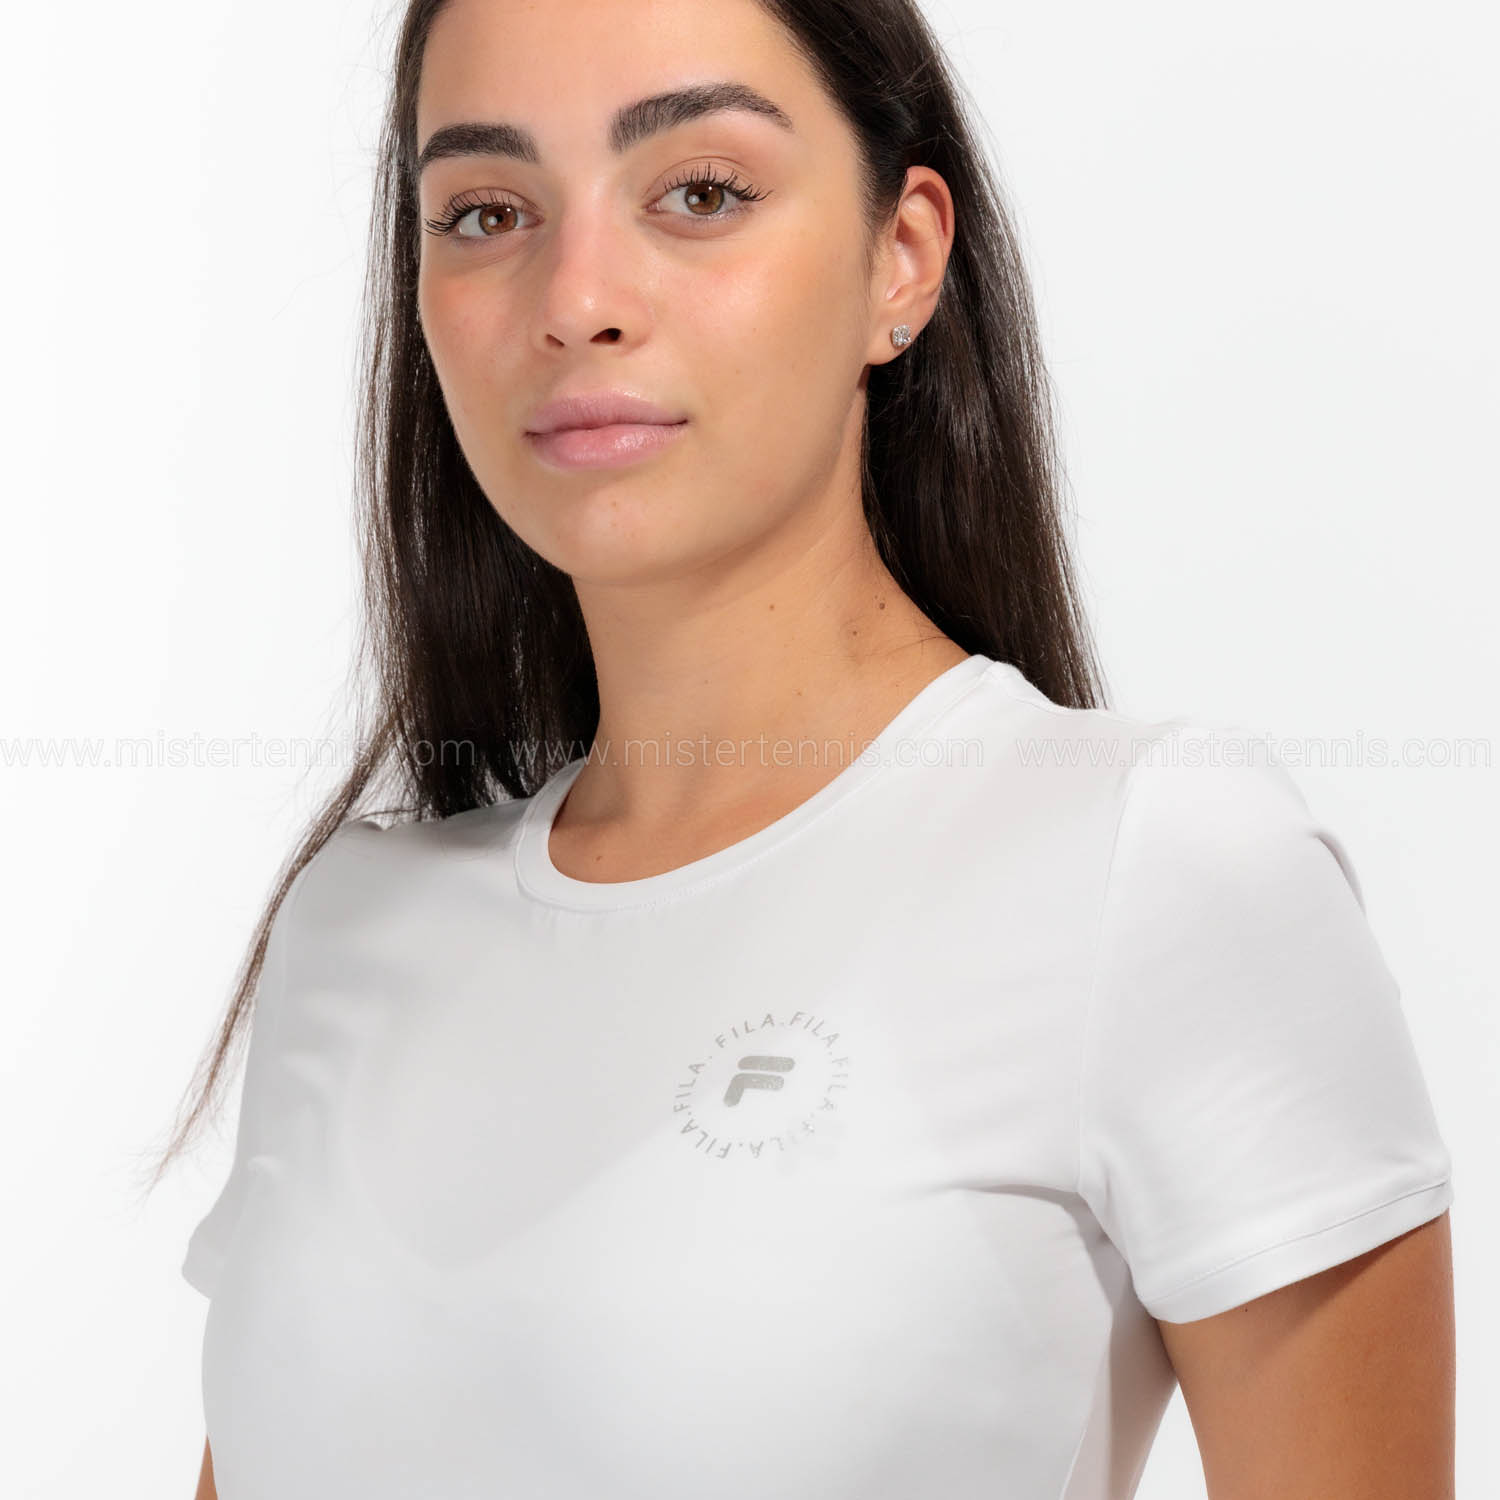 Fila Mara T-Shirt - White